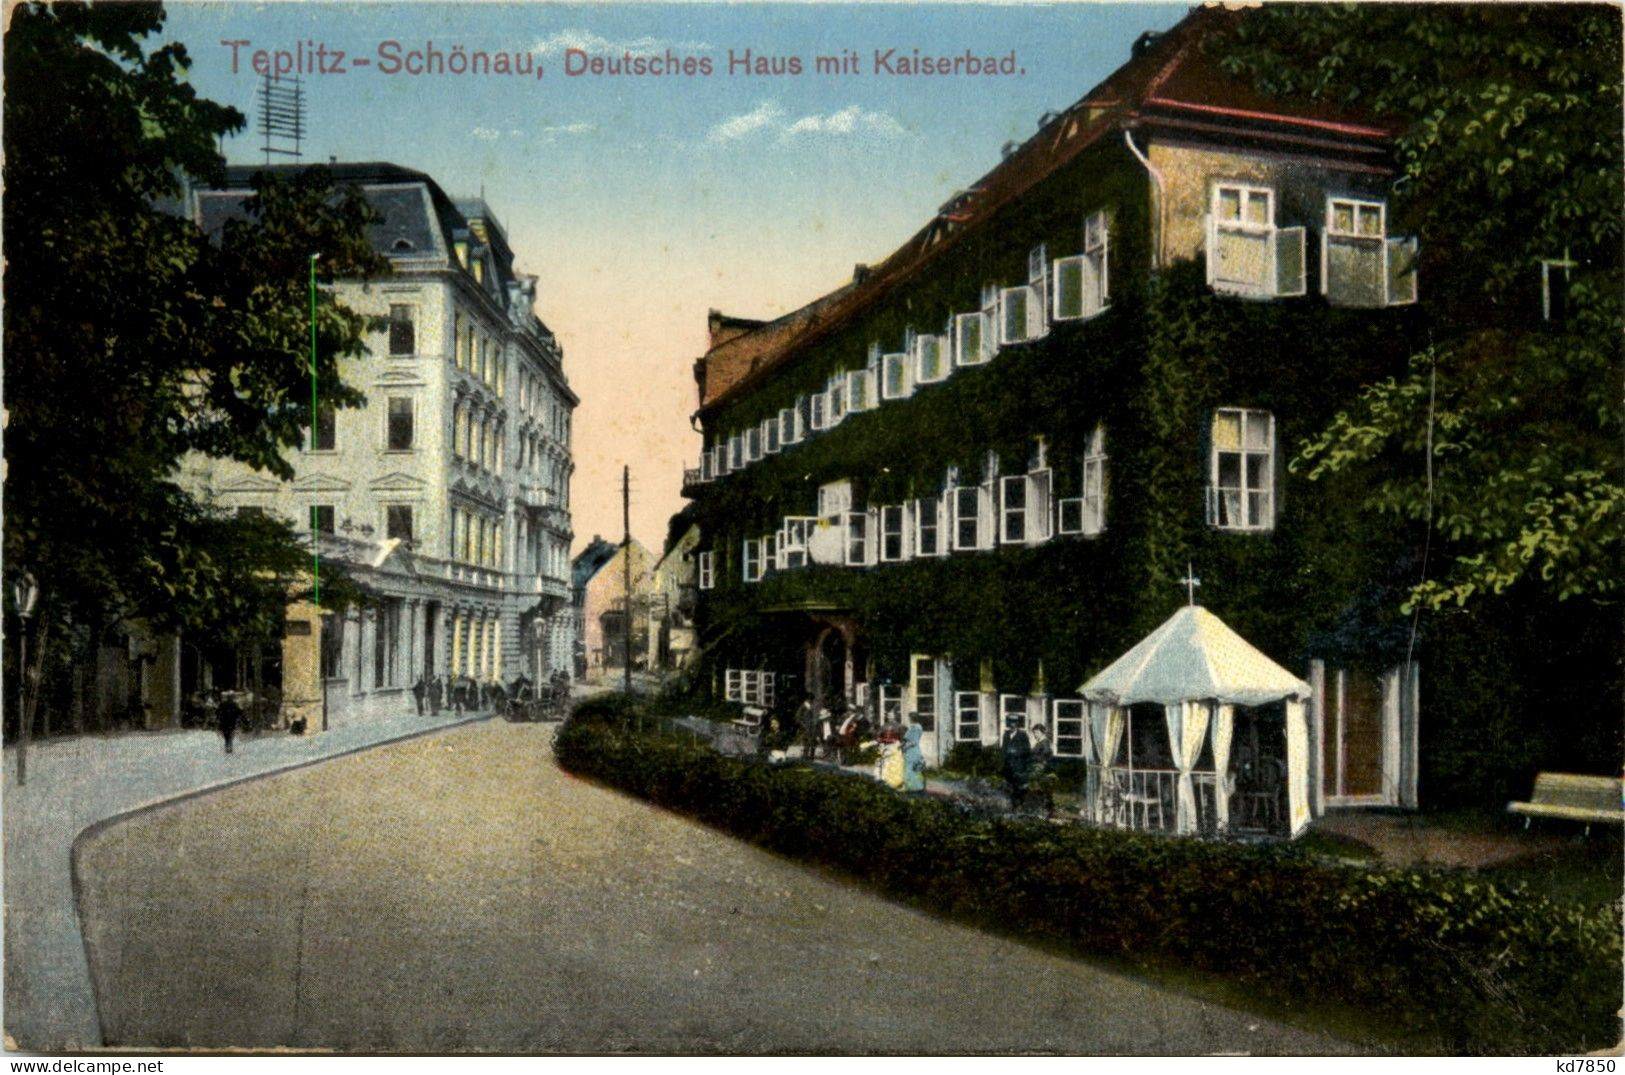 Teplitz Schönau - Deutsches Haus - Tschechische Republik